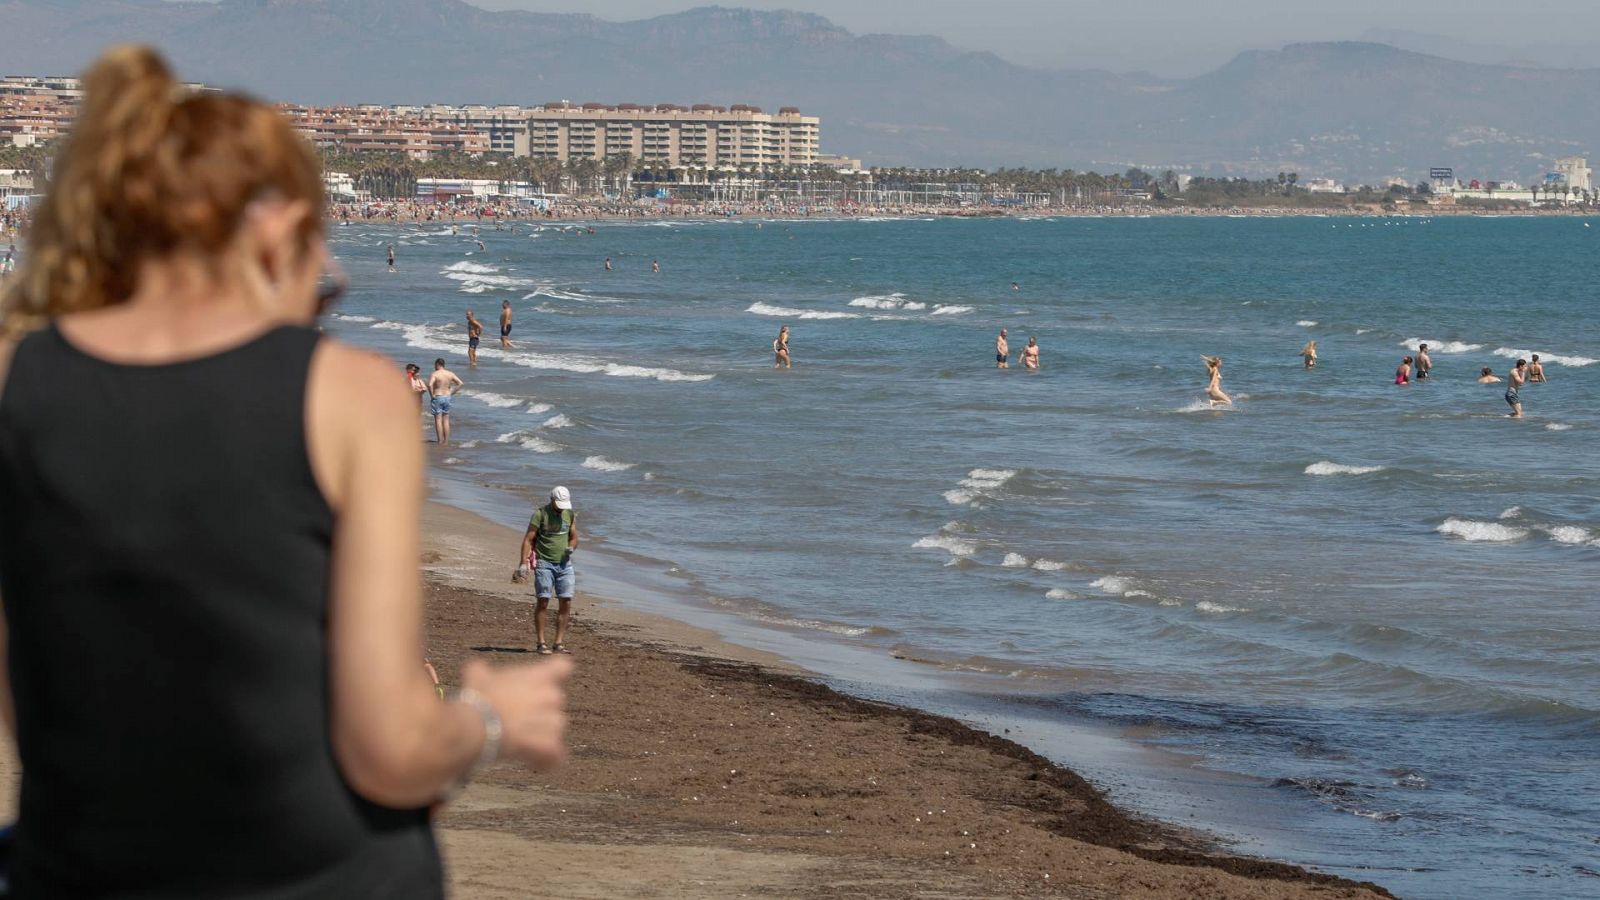 Vista de una de las playas valencianas a las que han acudido cientos de personas por el calor en pleno abril